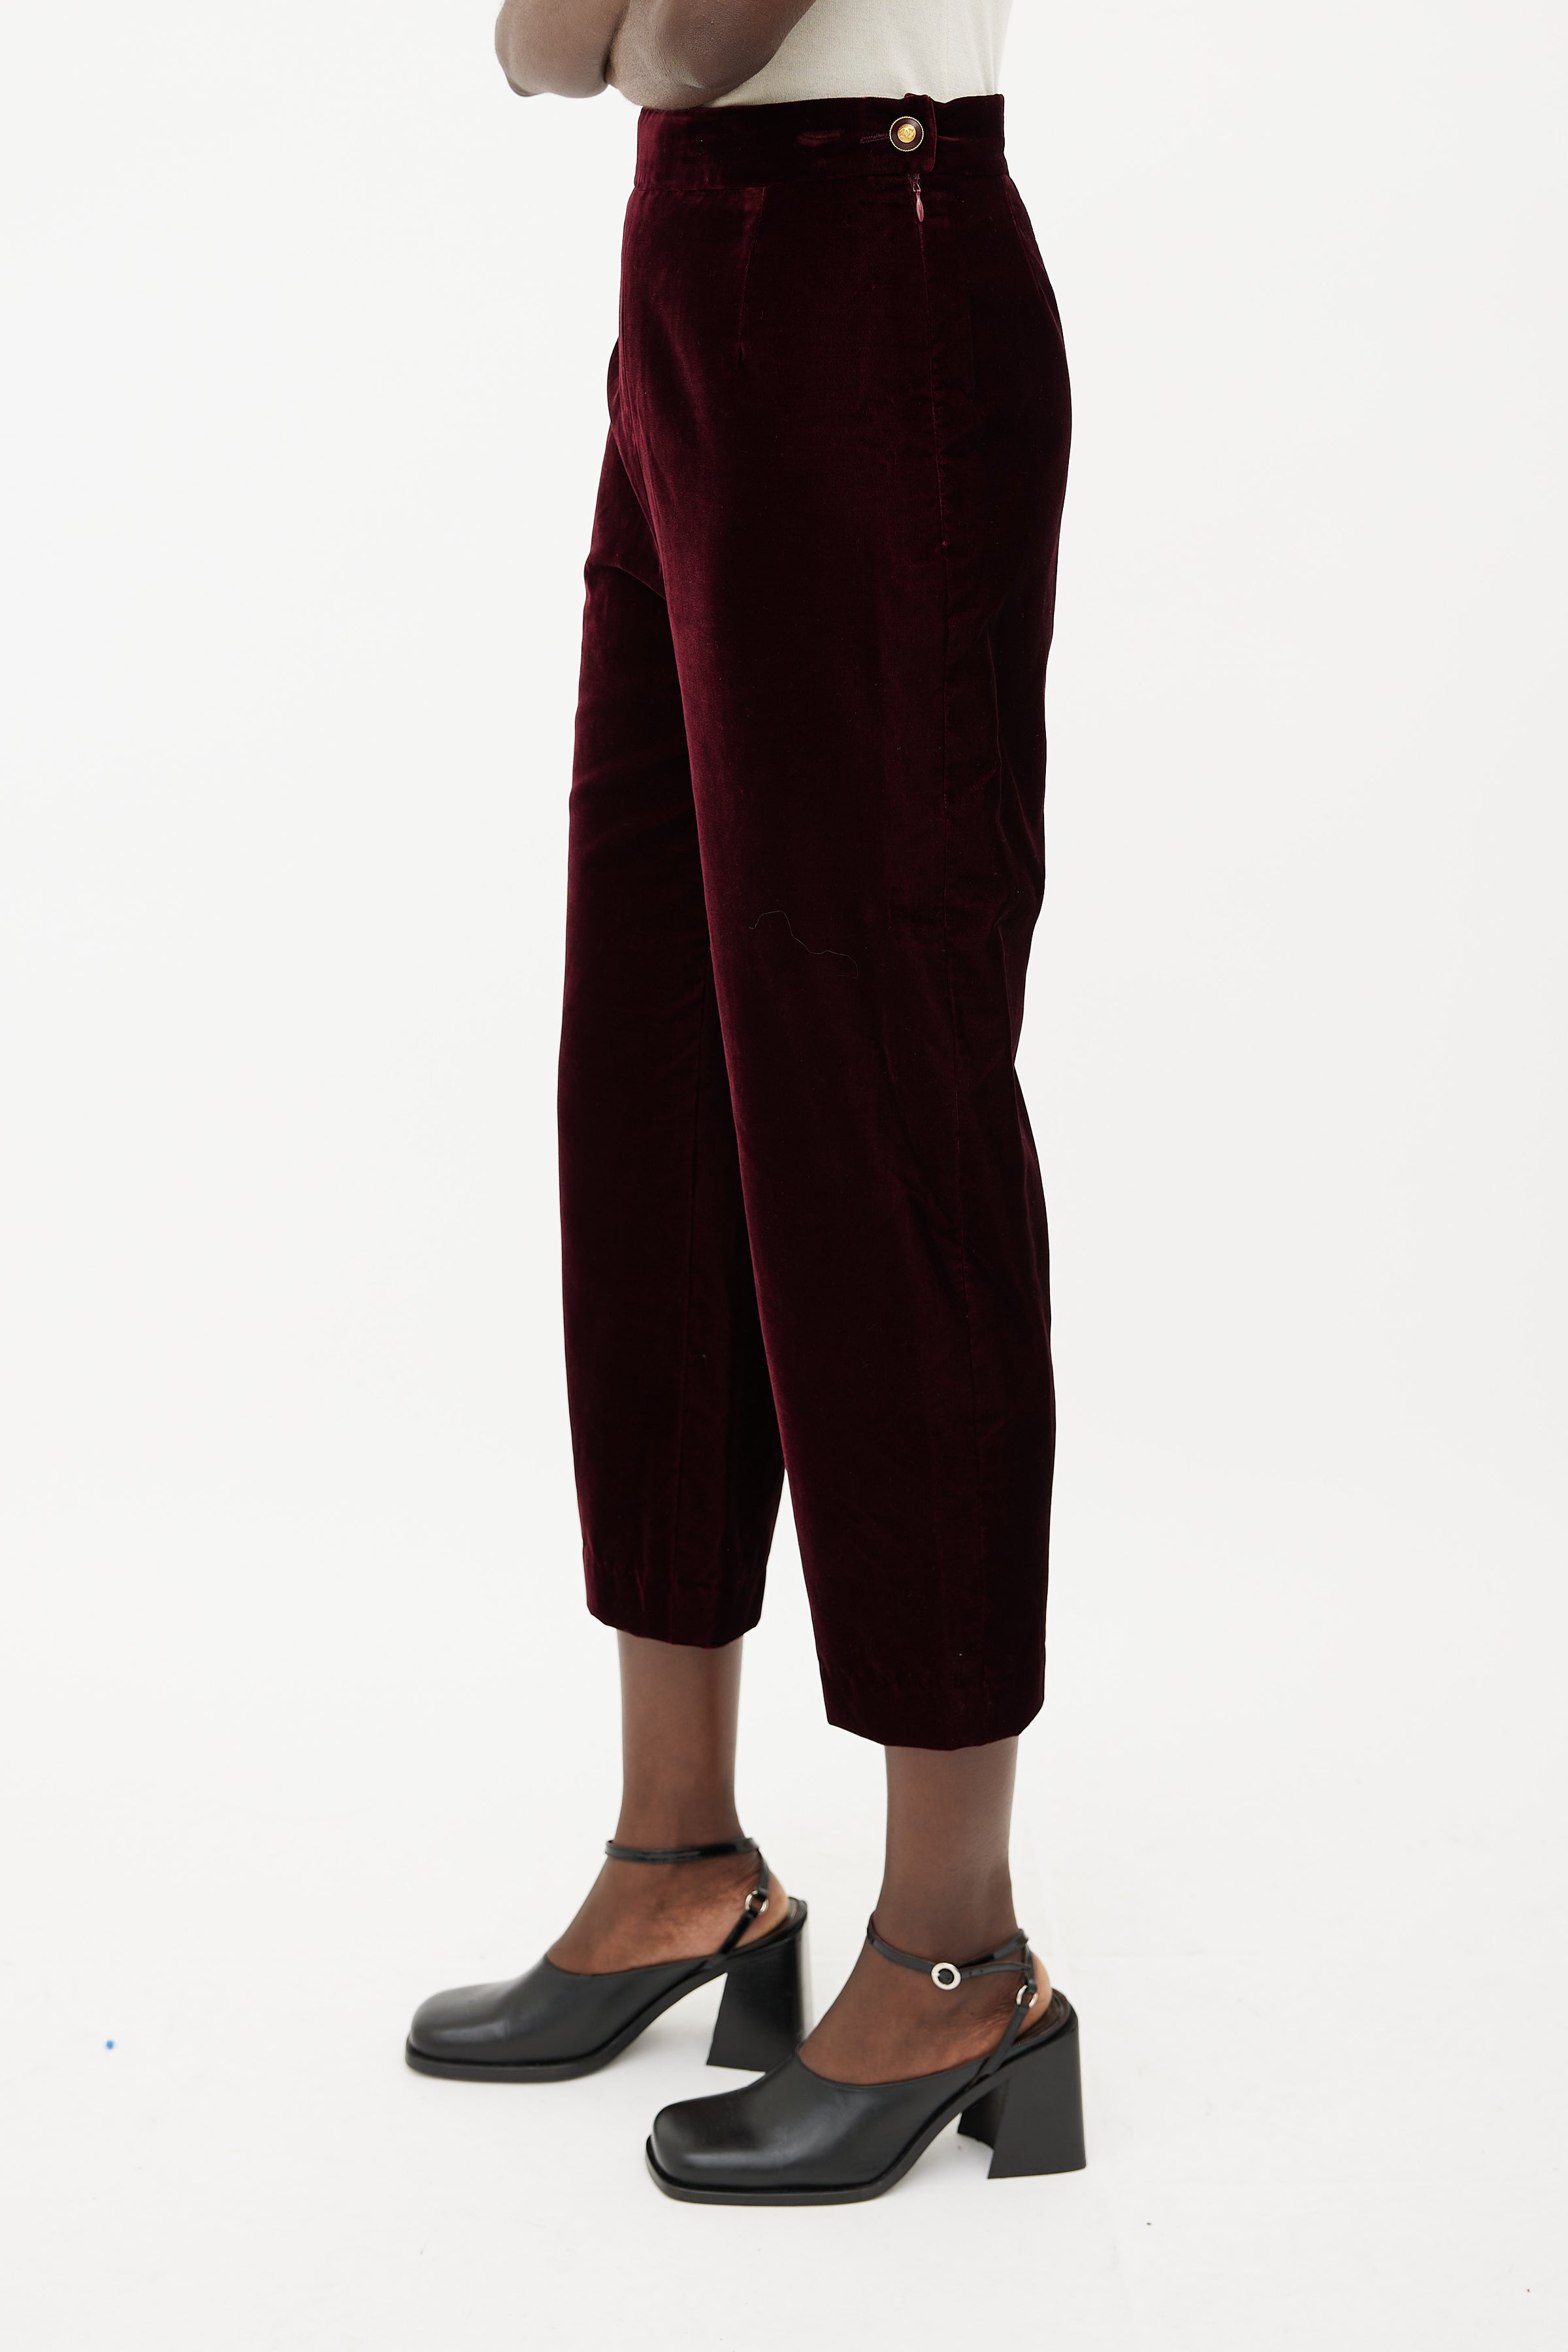 Chanel Luxury Velvet Fabric HHYH573 for Designer Shirts, Pants